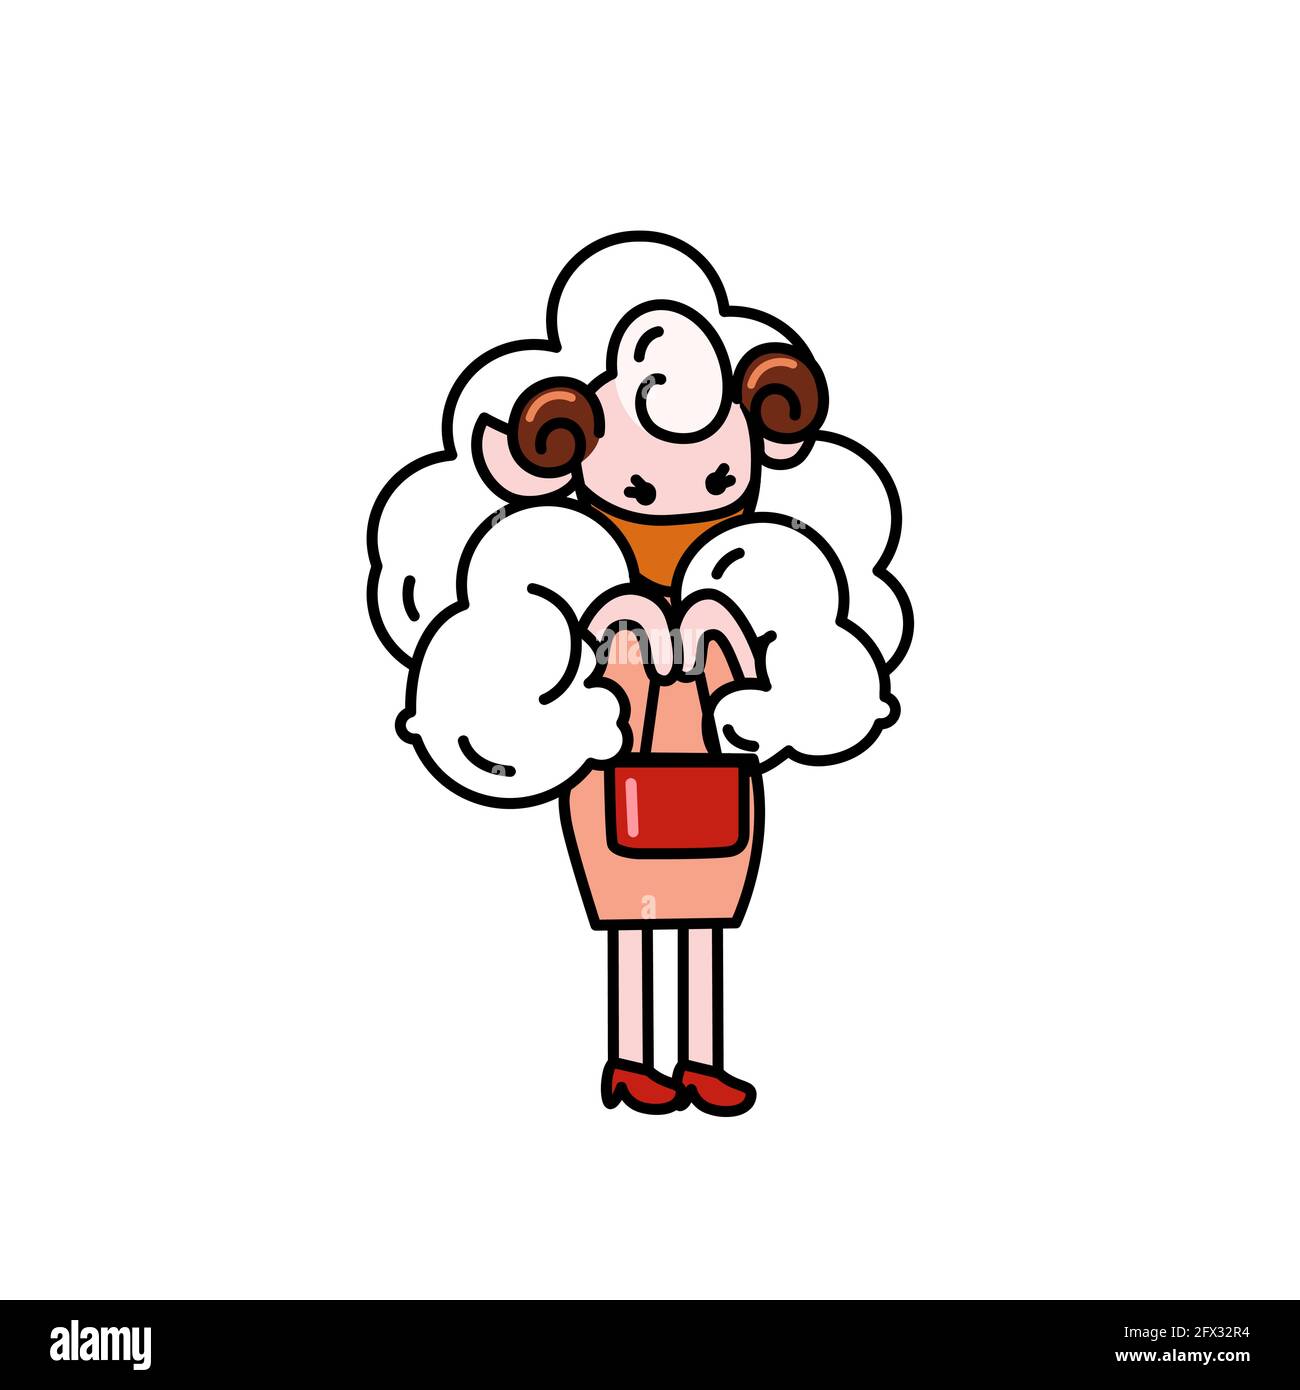 Un joli mouton portant un masque sanitaire empêchent le coronavirus, la grippe, la poussière personnage de bande dessinée avec le contour noir de vecteur plat isolé sur le dos blanc Illustration de Vecteur